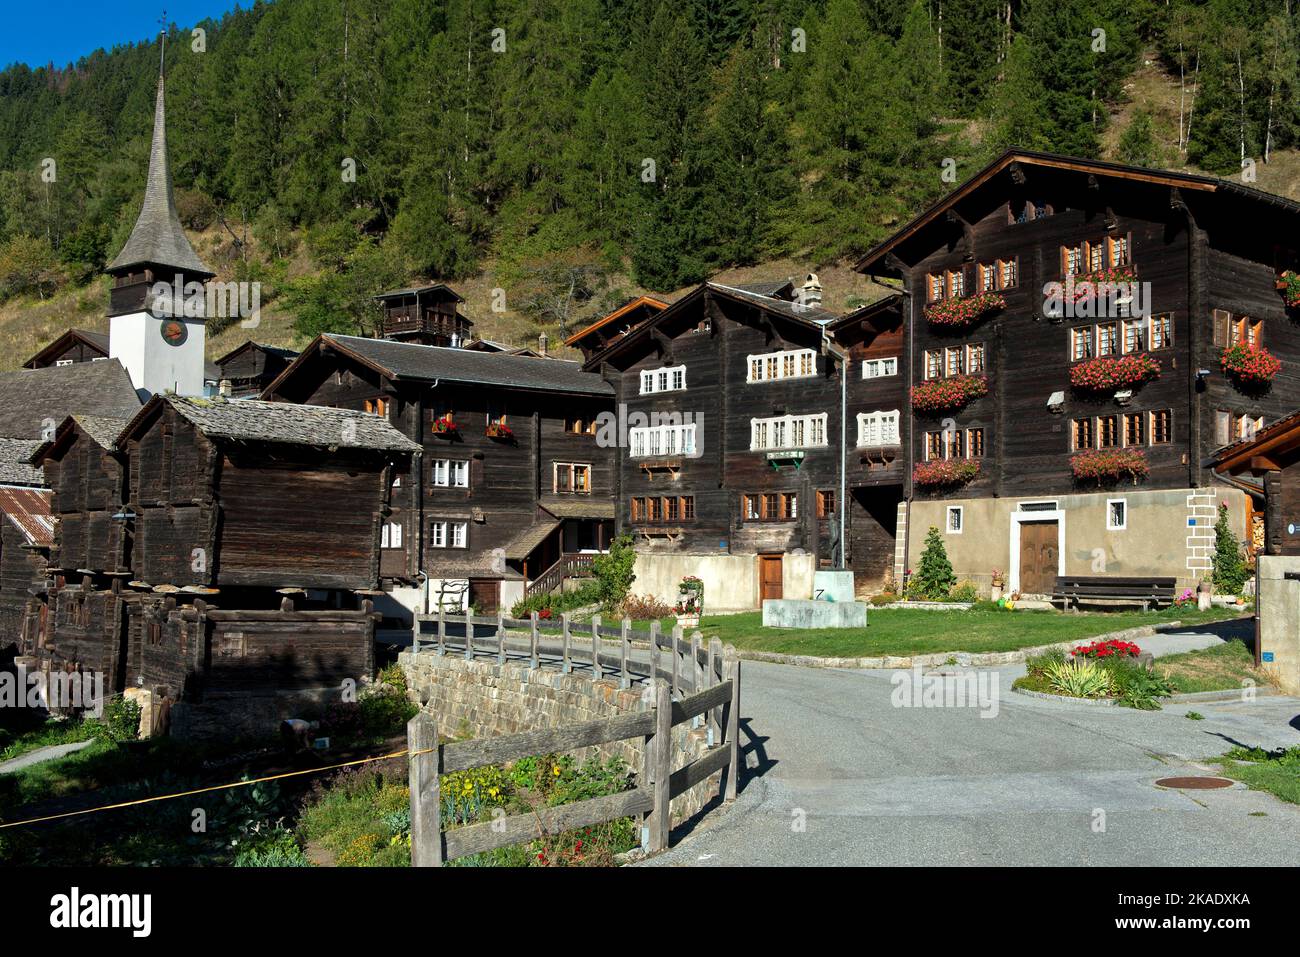 Dorfplatz der Walliser Gemeinde Niederwald, Geburtsort von Caesar Ritz, Pionier der Luxushotelbranche, Niederwald, Wallis, Schweiz Stockfoto